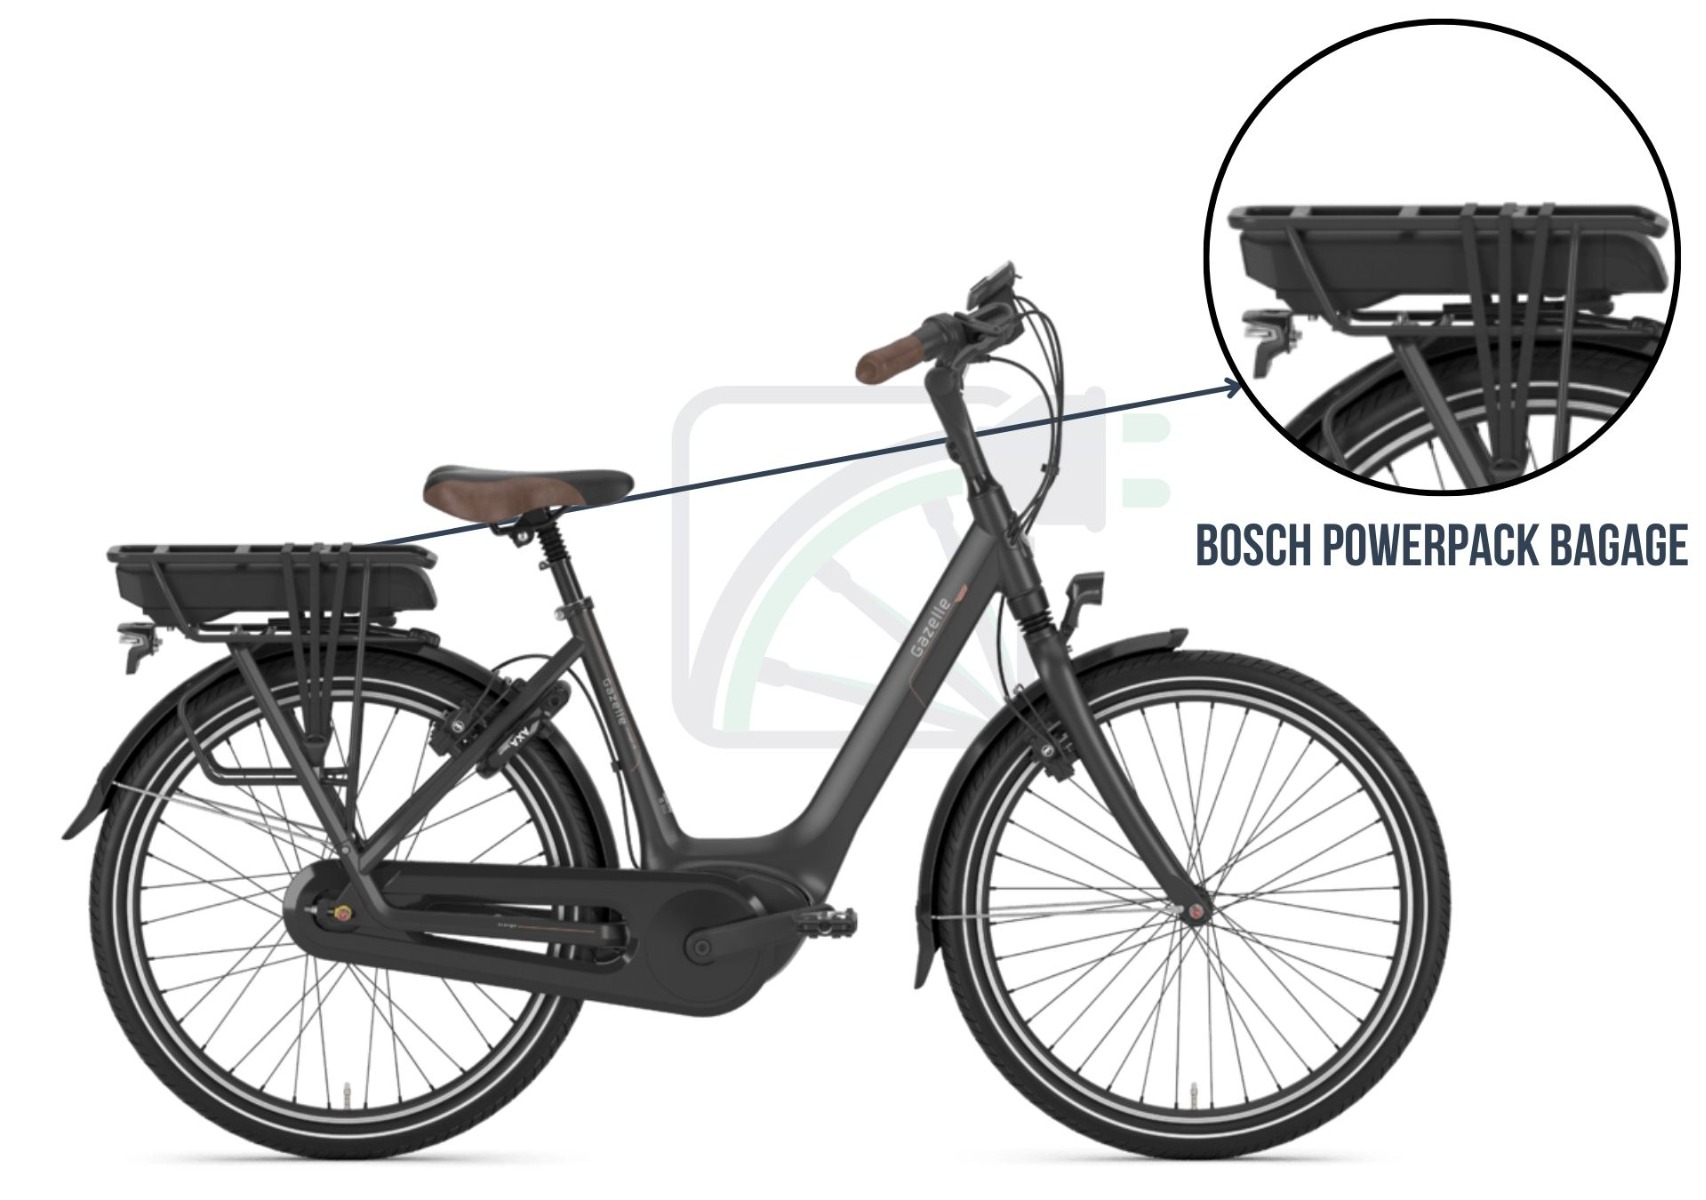 Dieses Bild zeigt ein Elektrofahrrad. Das Bild hebt die Batterie hervor und beschreibt, welche Batterien zu diesem Fahrradtyp passen. In diesem Fall handelt es sich um den Bosch Powerpack-Träger.